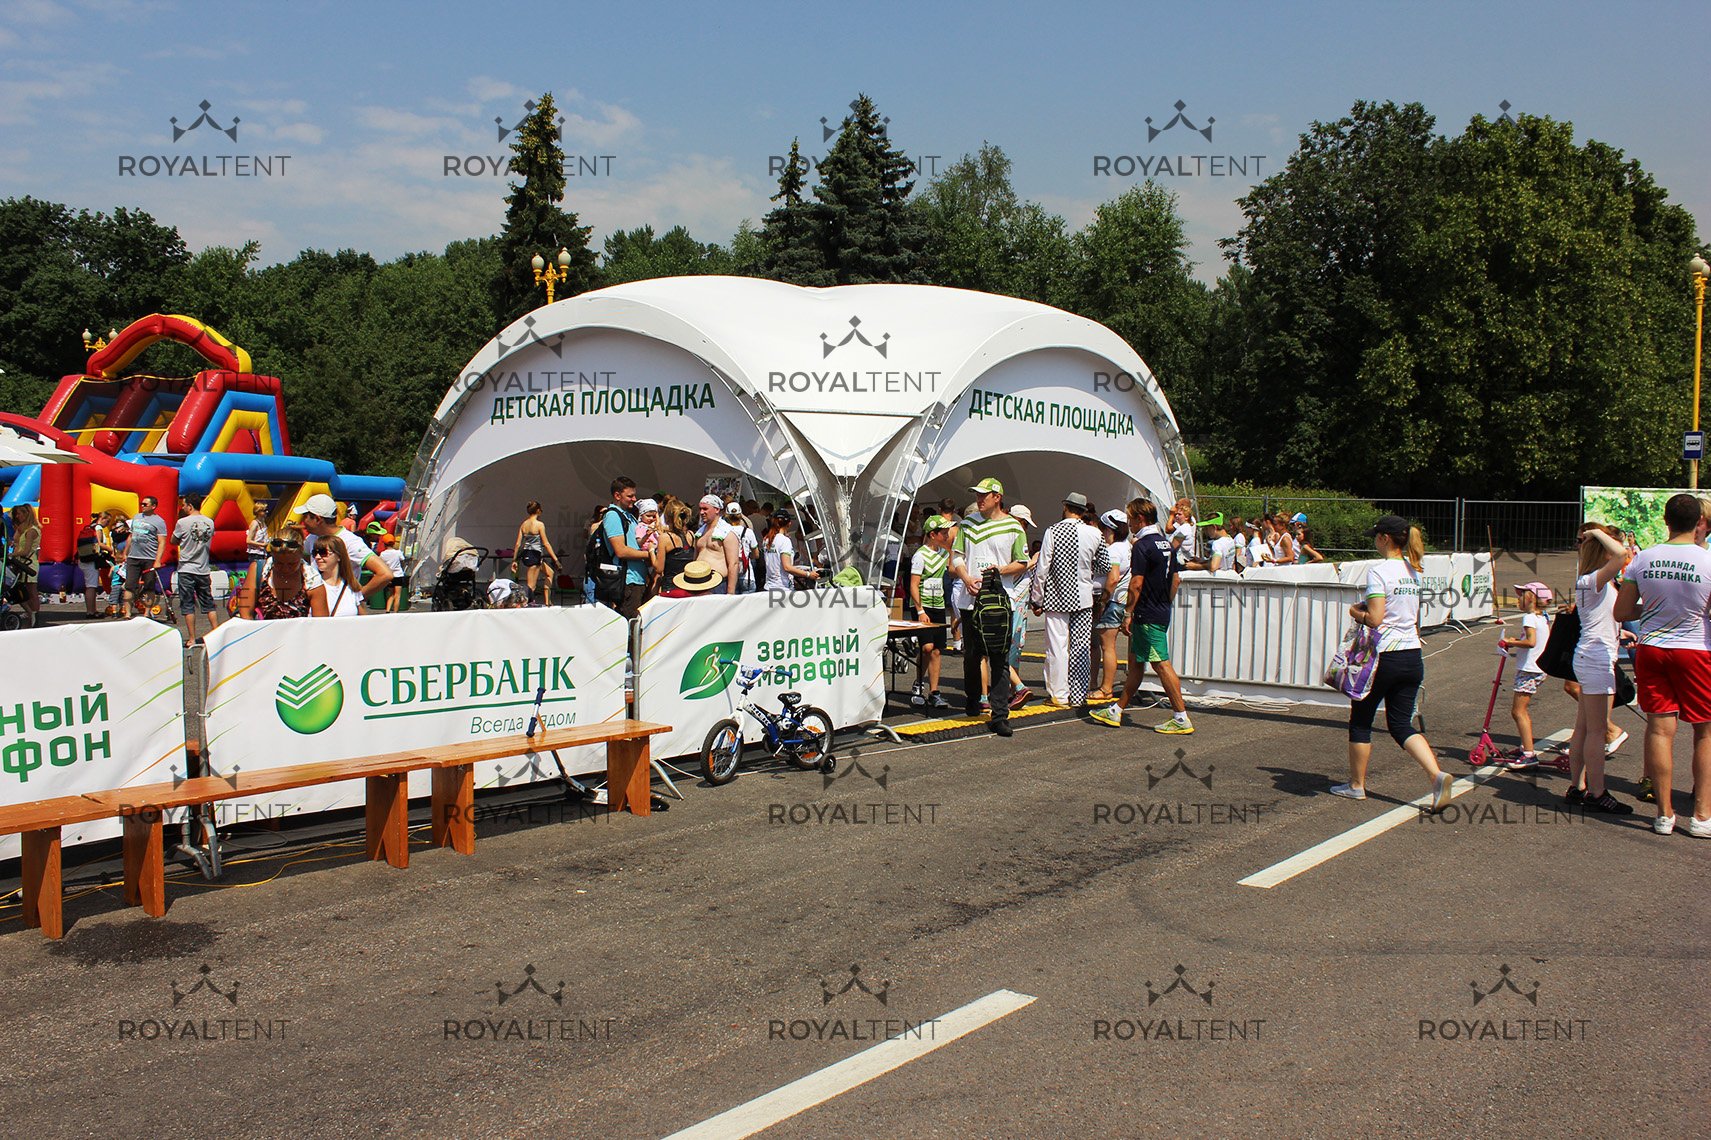 Аренда шатров для проведения национального забега «Зеленый марафон» Сбербанка